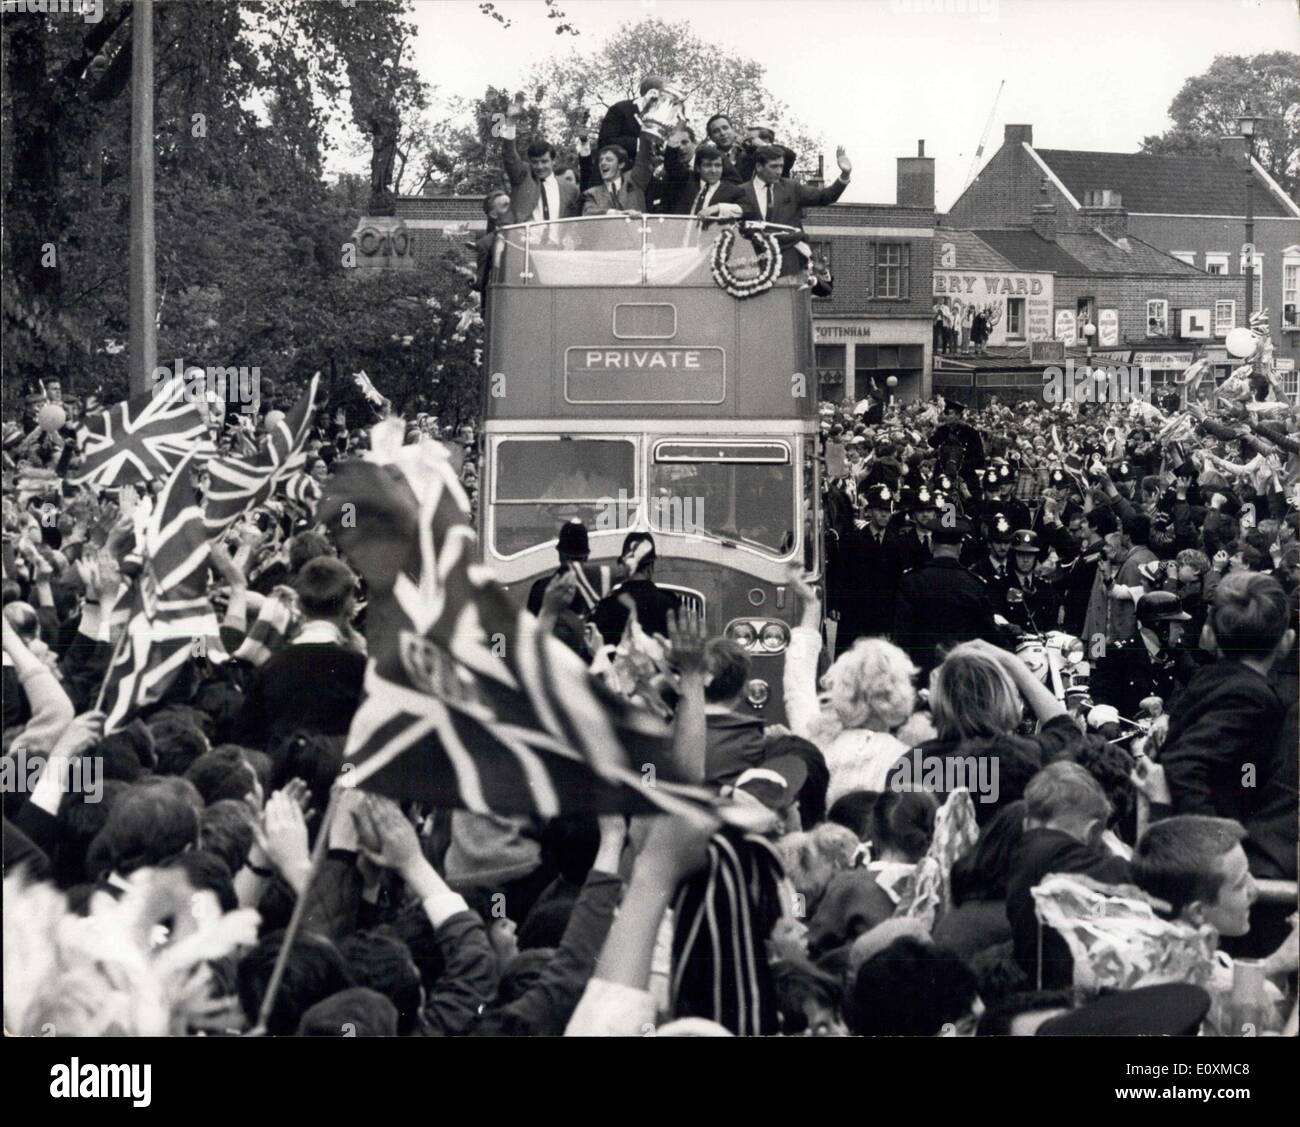 21 maggio 1967 - Il trionfante F.A. Coppa del vincitore prendere parte in una vittoria di guida attraverso il Tottenham: celebrare la loro vittoria di F.A. Per la finale di coppa dopo aver sconfitto Cheslea 2-1 a Wembley ieri, gli speroni soccer team sono stati dare una grande accoglienza da parte della folla come cavalcarono in un autobus a due piani da Edmonton Town Hall. La foto mostra le bandiere onda ed una grande allegria va come il bus che porta gli speroni squadra arriverà a Tottenham Hall di oggi. Foto Stock